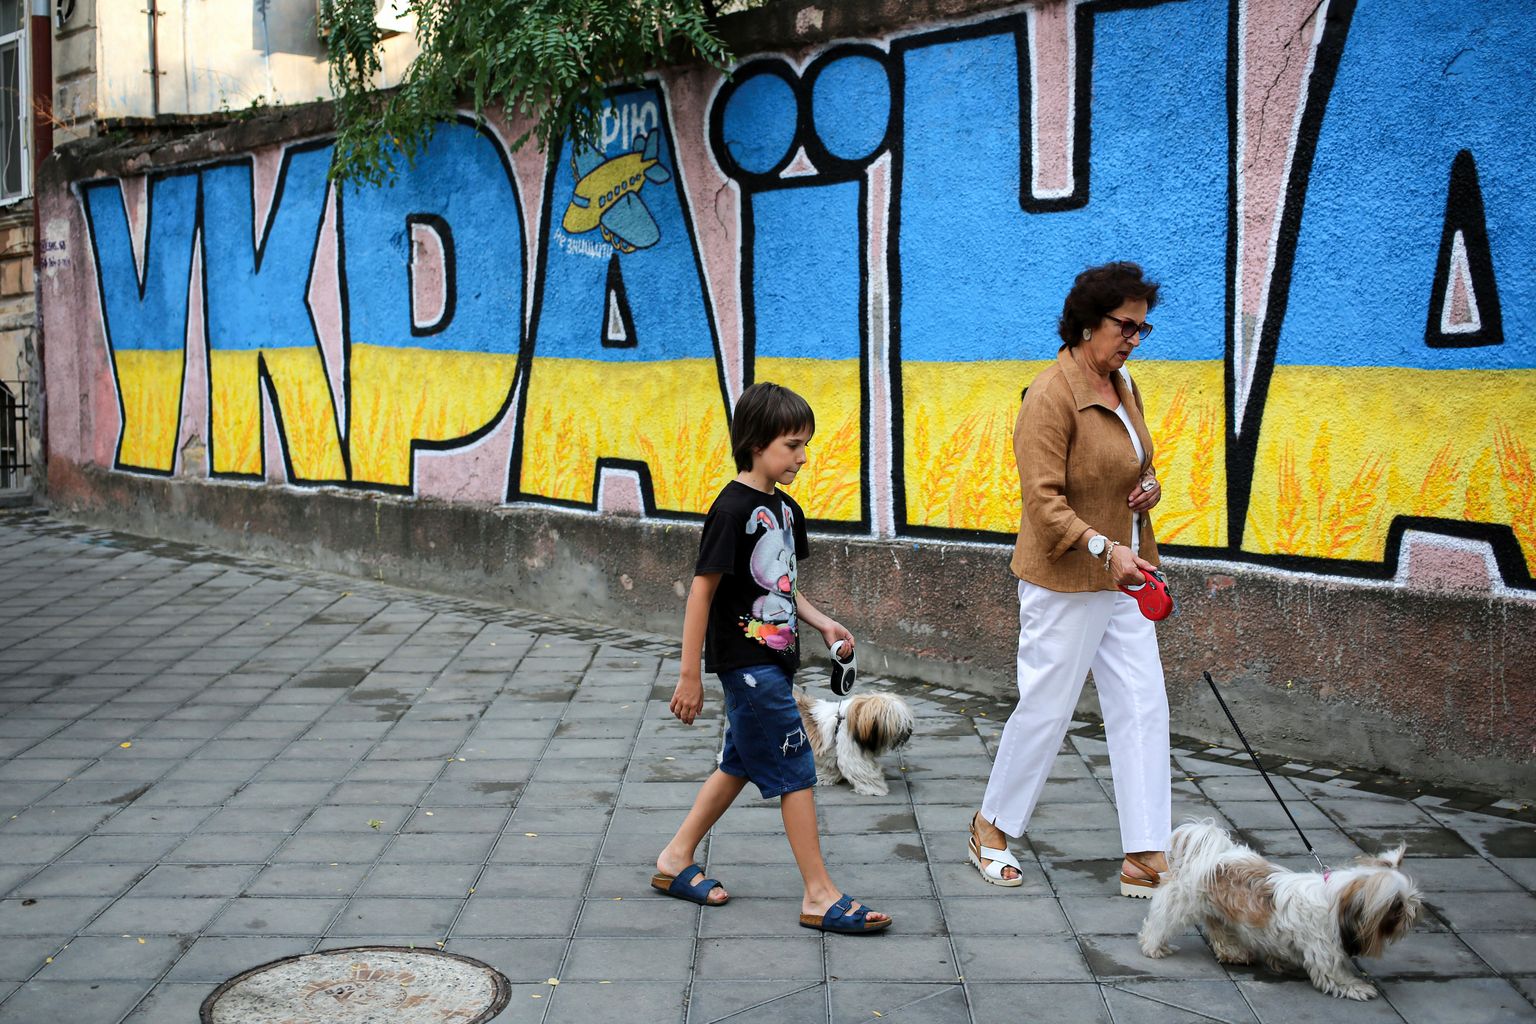 Одесса, Украина, 11 августа 2022 года. Женщина и мальчик с собаками на поводке проходят мимо стены с надписью "Украина. Мечта не может быть разрушена".